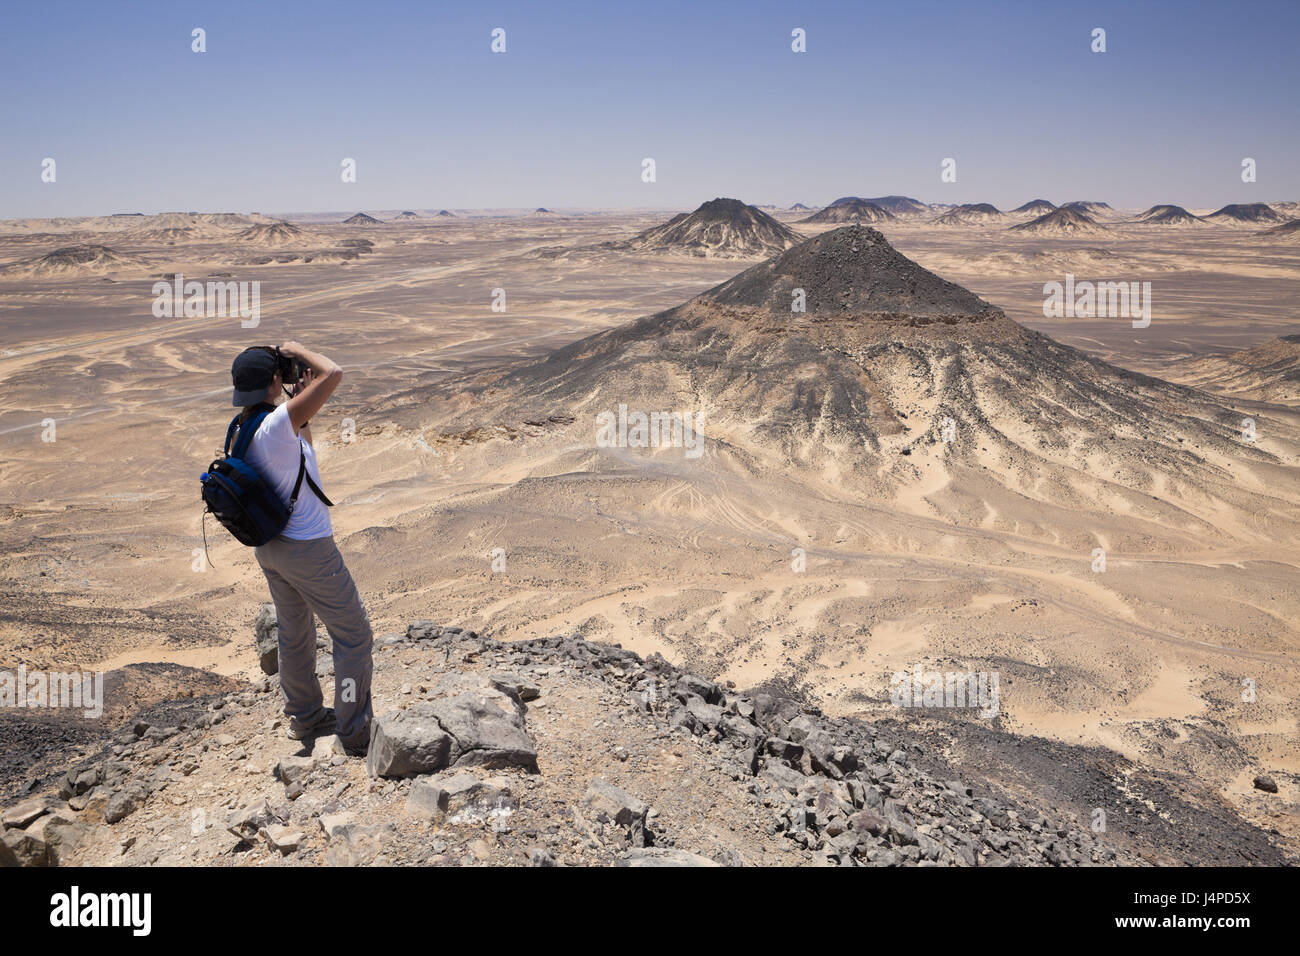 Tourist in black desert, Egypt, Libyan desert, Stock Photo